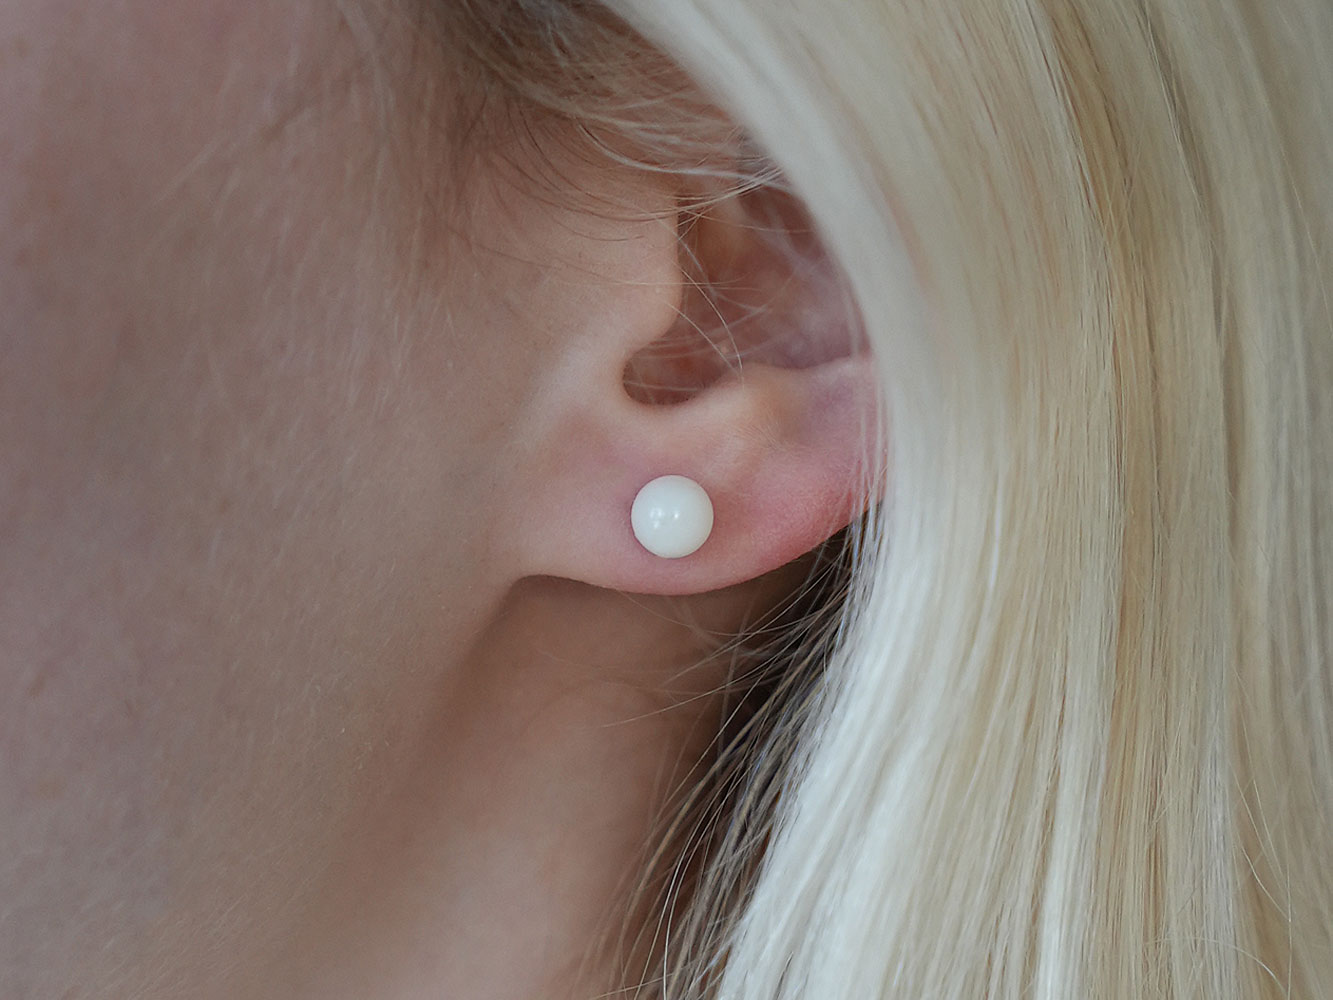 breastmilk-jewelry-pearl-earrings-model-keepsakemom